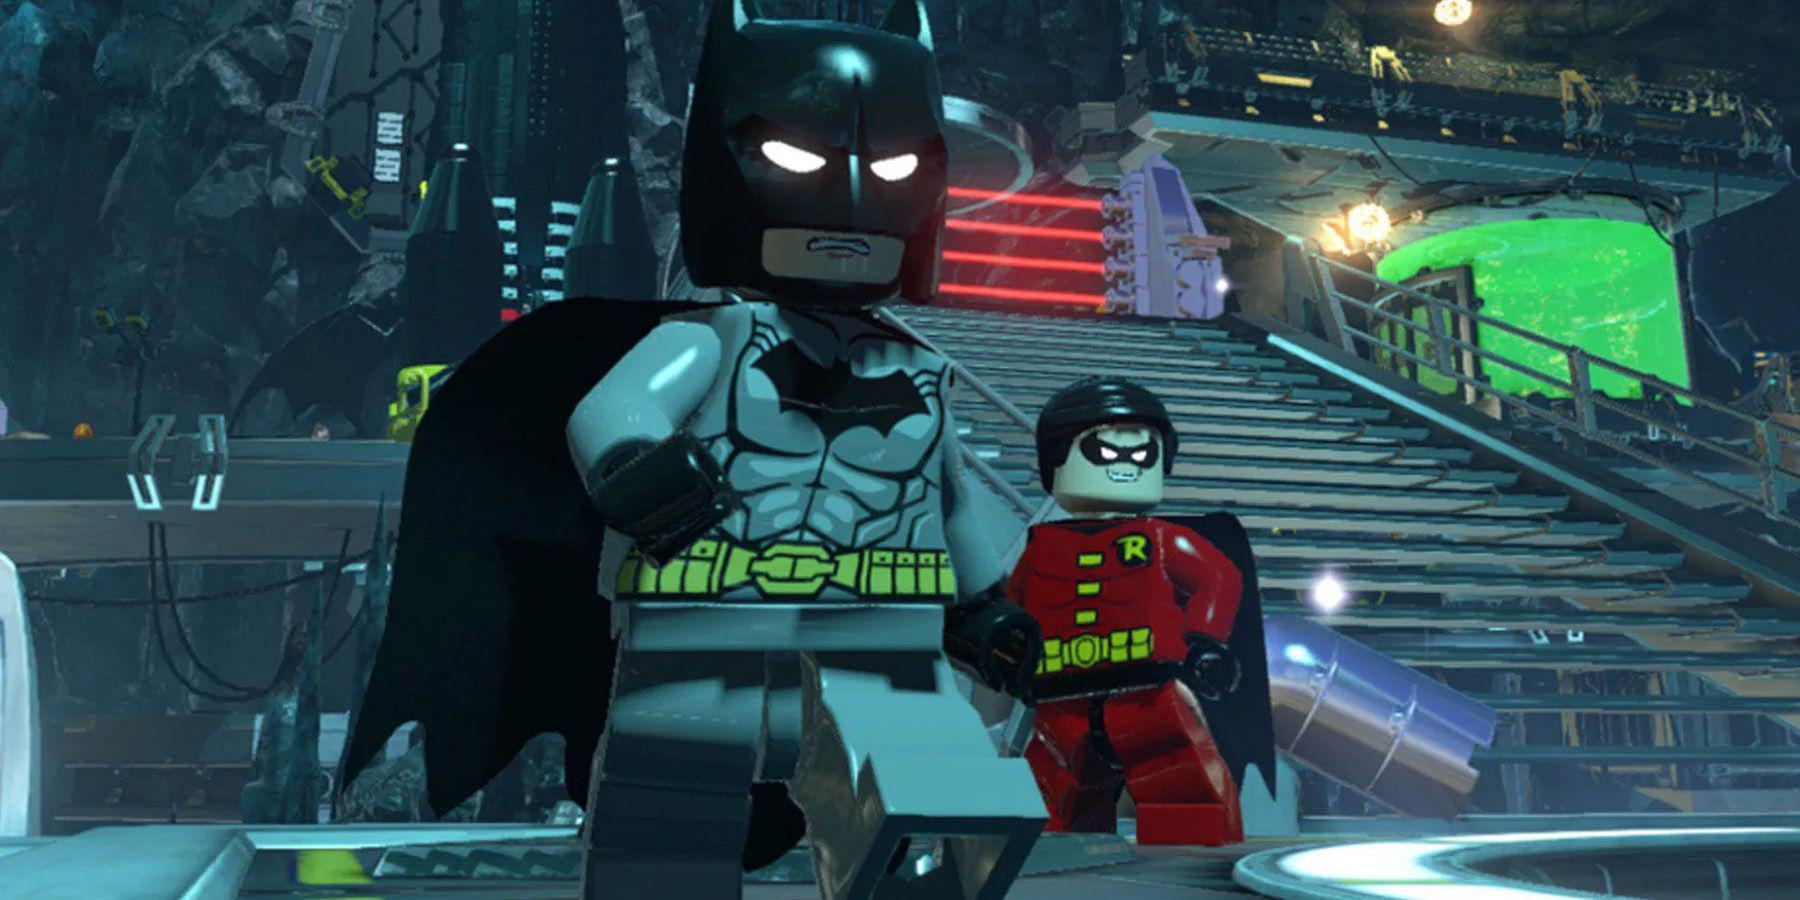 Os super-heróis da Lego DC devem sair muito antes de um Lego Batman 4